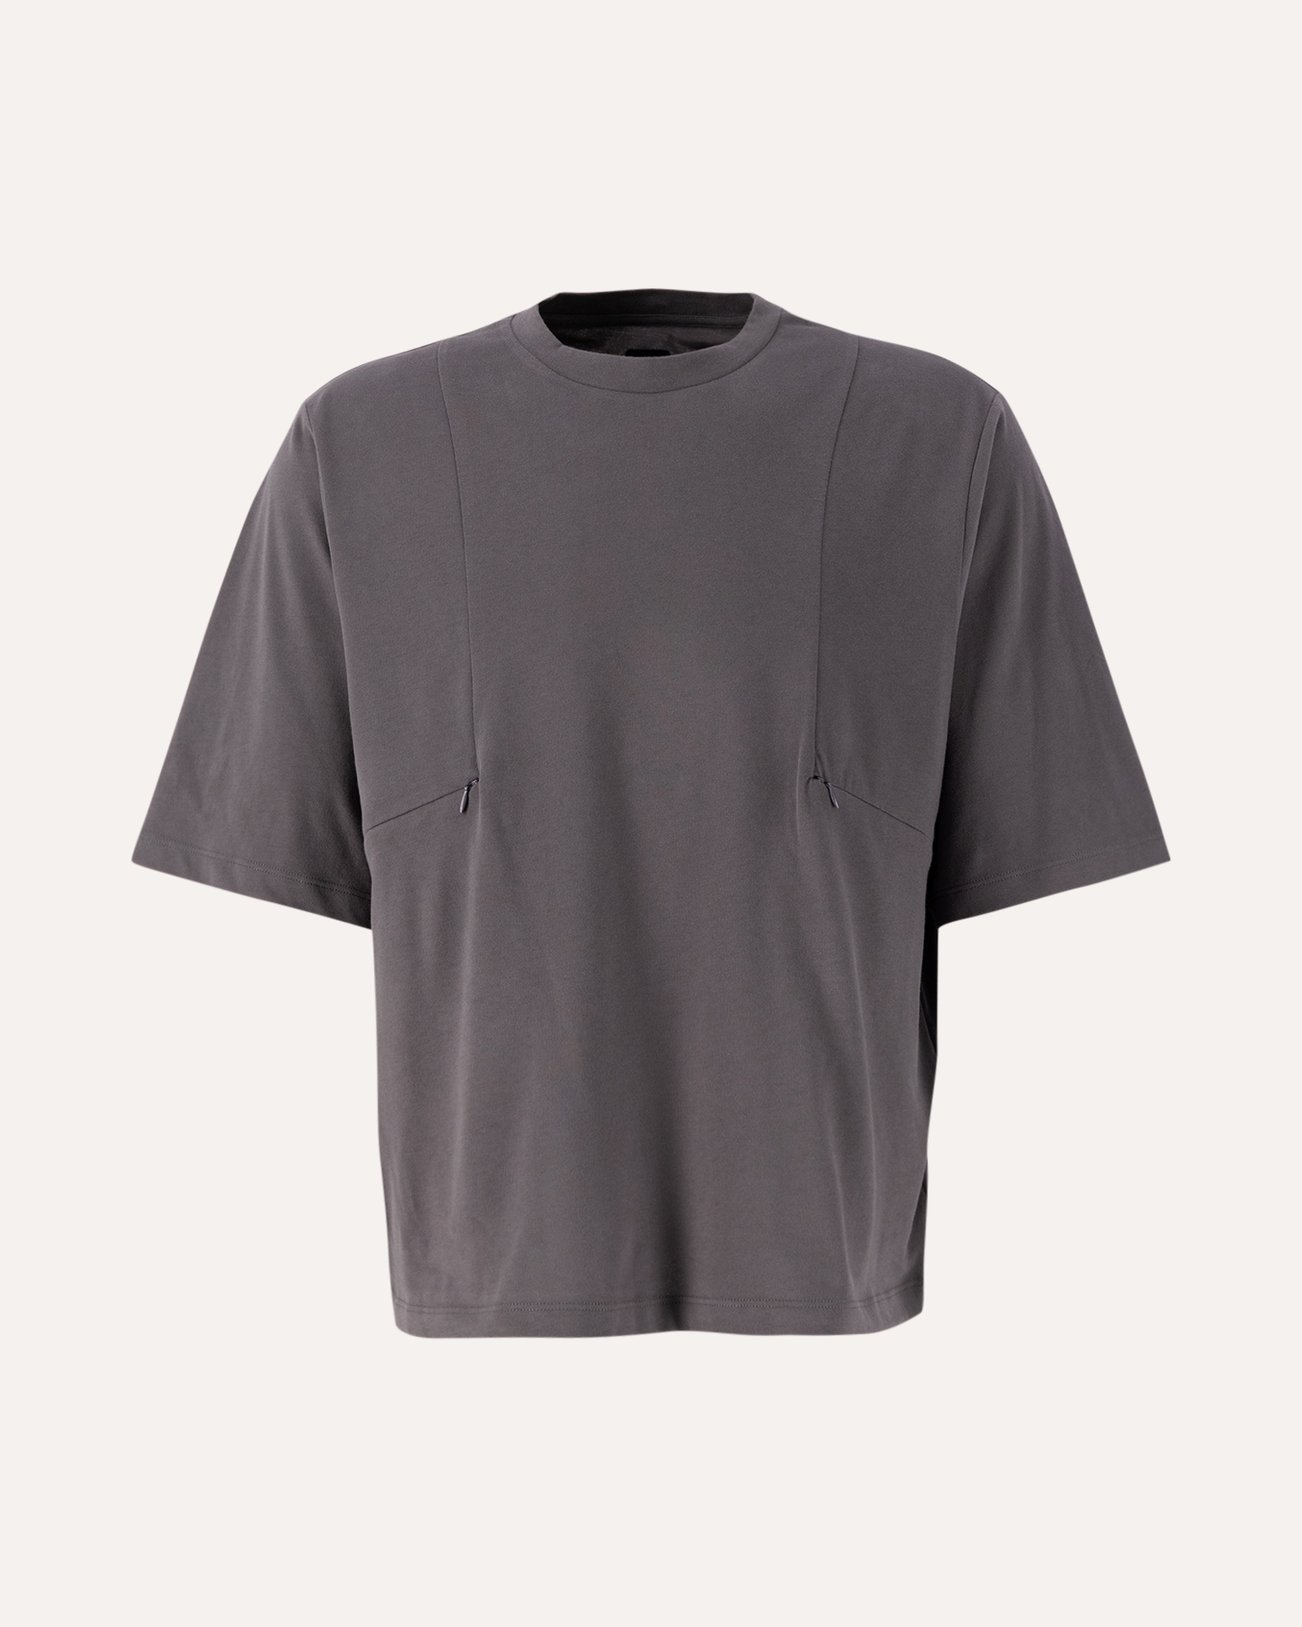 J.L-A.L T-Shirt Pocket GRIJS 1